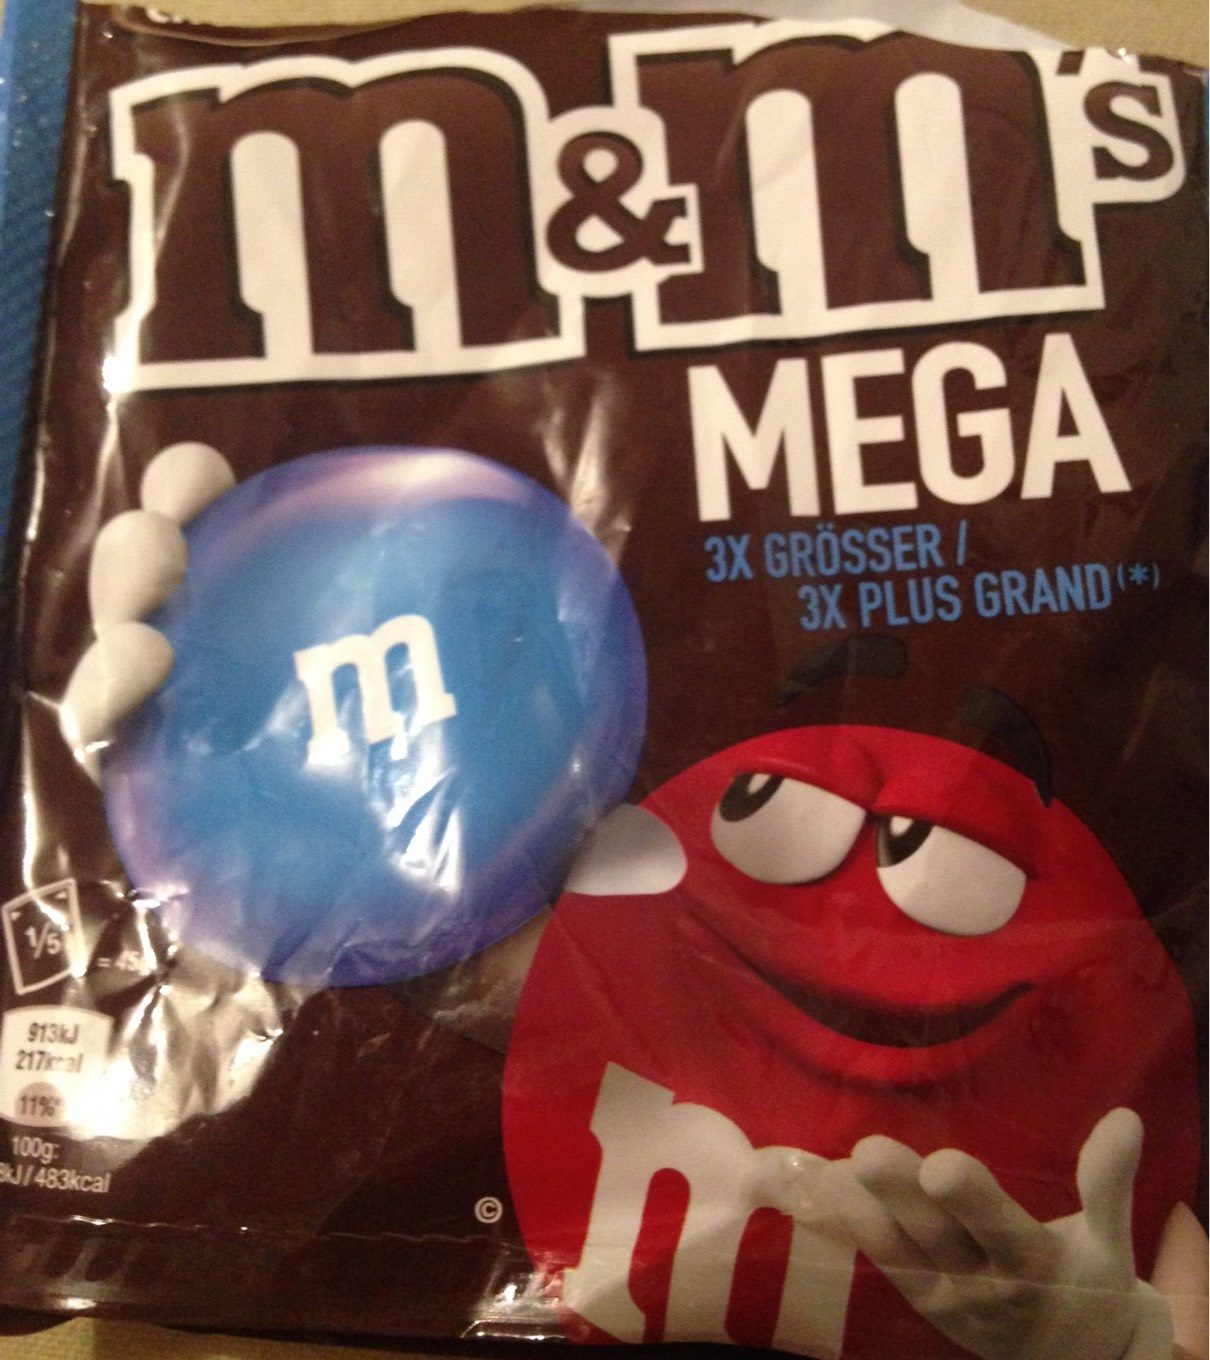 M &M'S Mega - Tableau nutritionnel